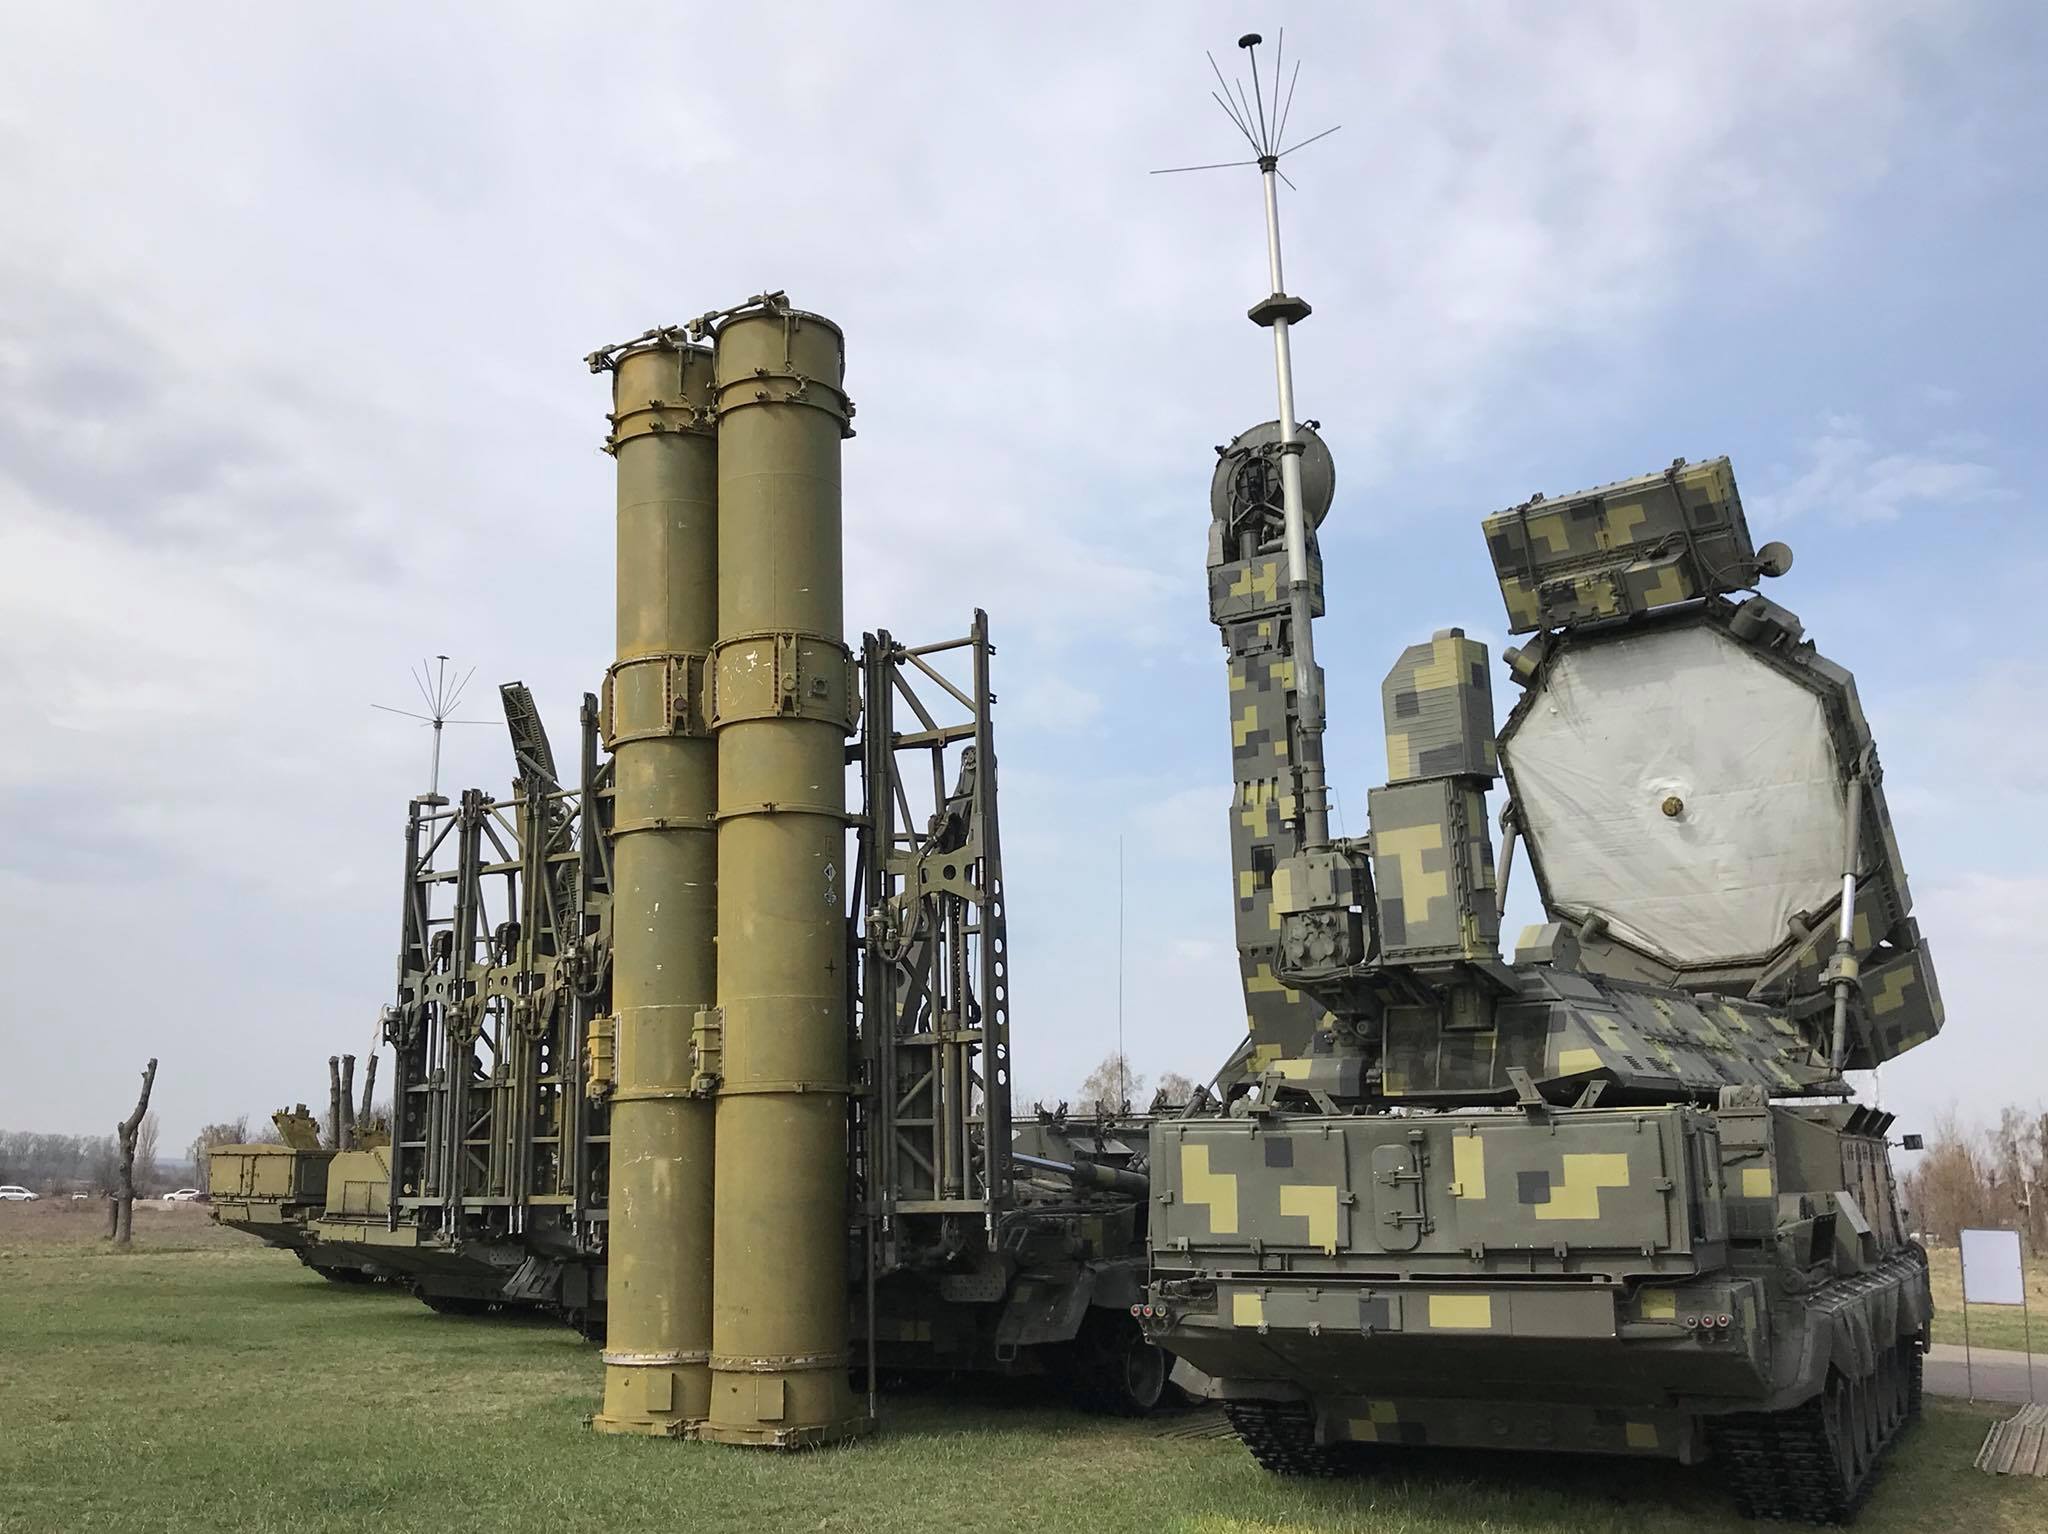 Lituania recauda en una semana 6 millones de euros para los radares de defensa antiaérea ucranianos, un millón más de lo previsto